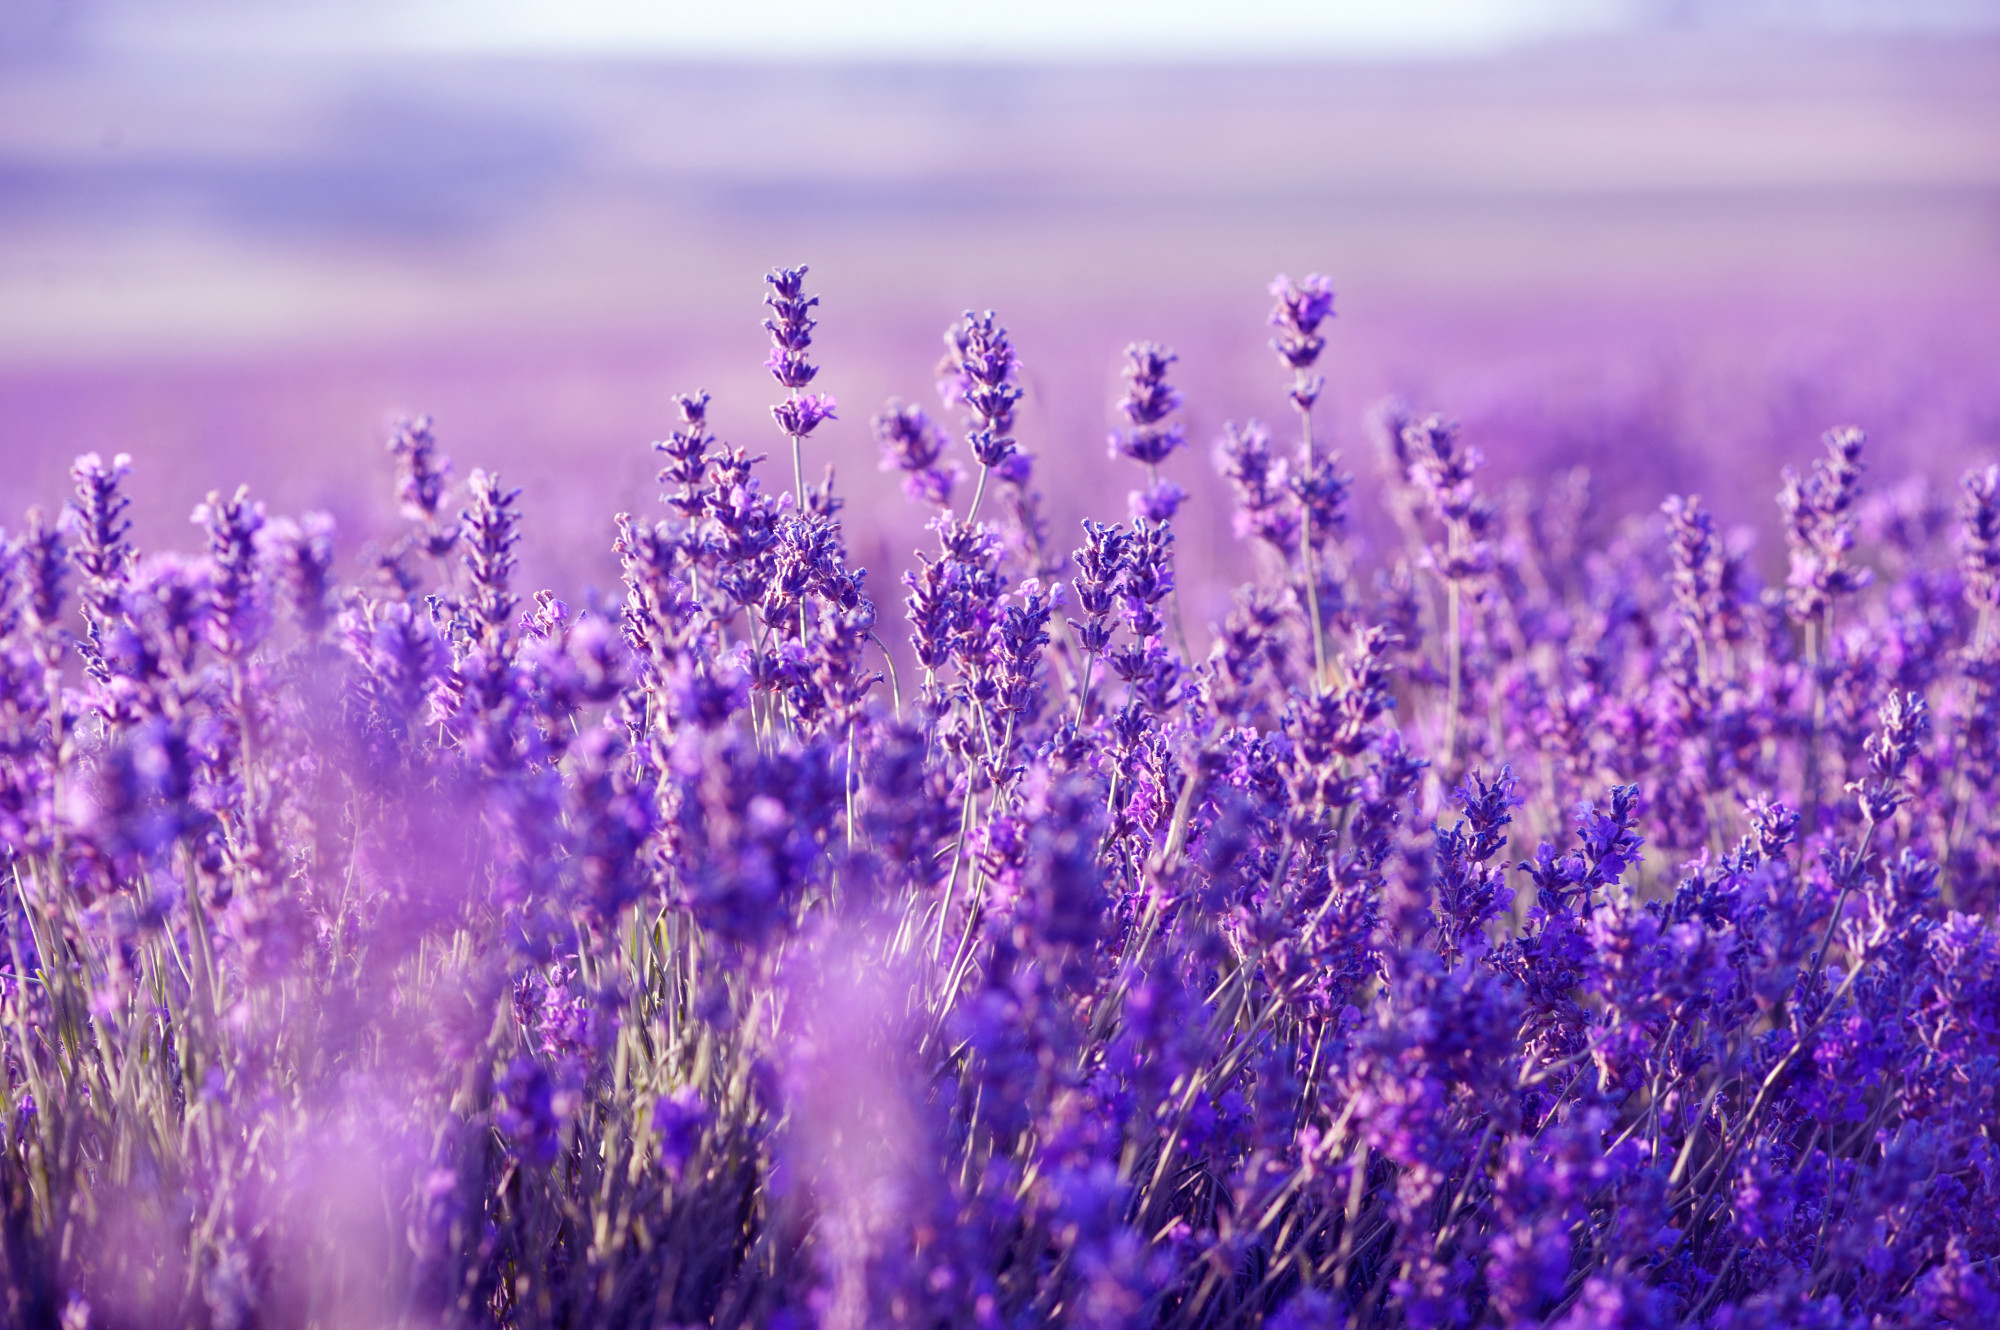 Hình nền Lavender làm mới màn hình điện thoại của bạn với màu tím trầm thảo nguyên chất. Hãy sắm ngay cho thiết bị của bạn những hình nền Lavender đẹp mắt để tạo sự bắt mắt và độc đáo.